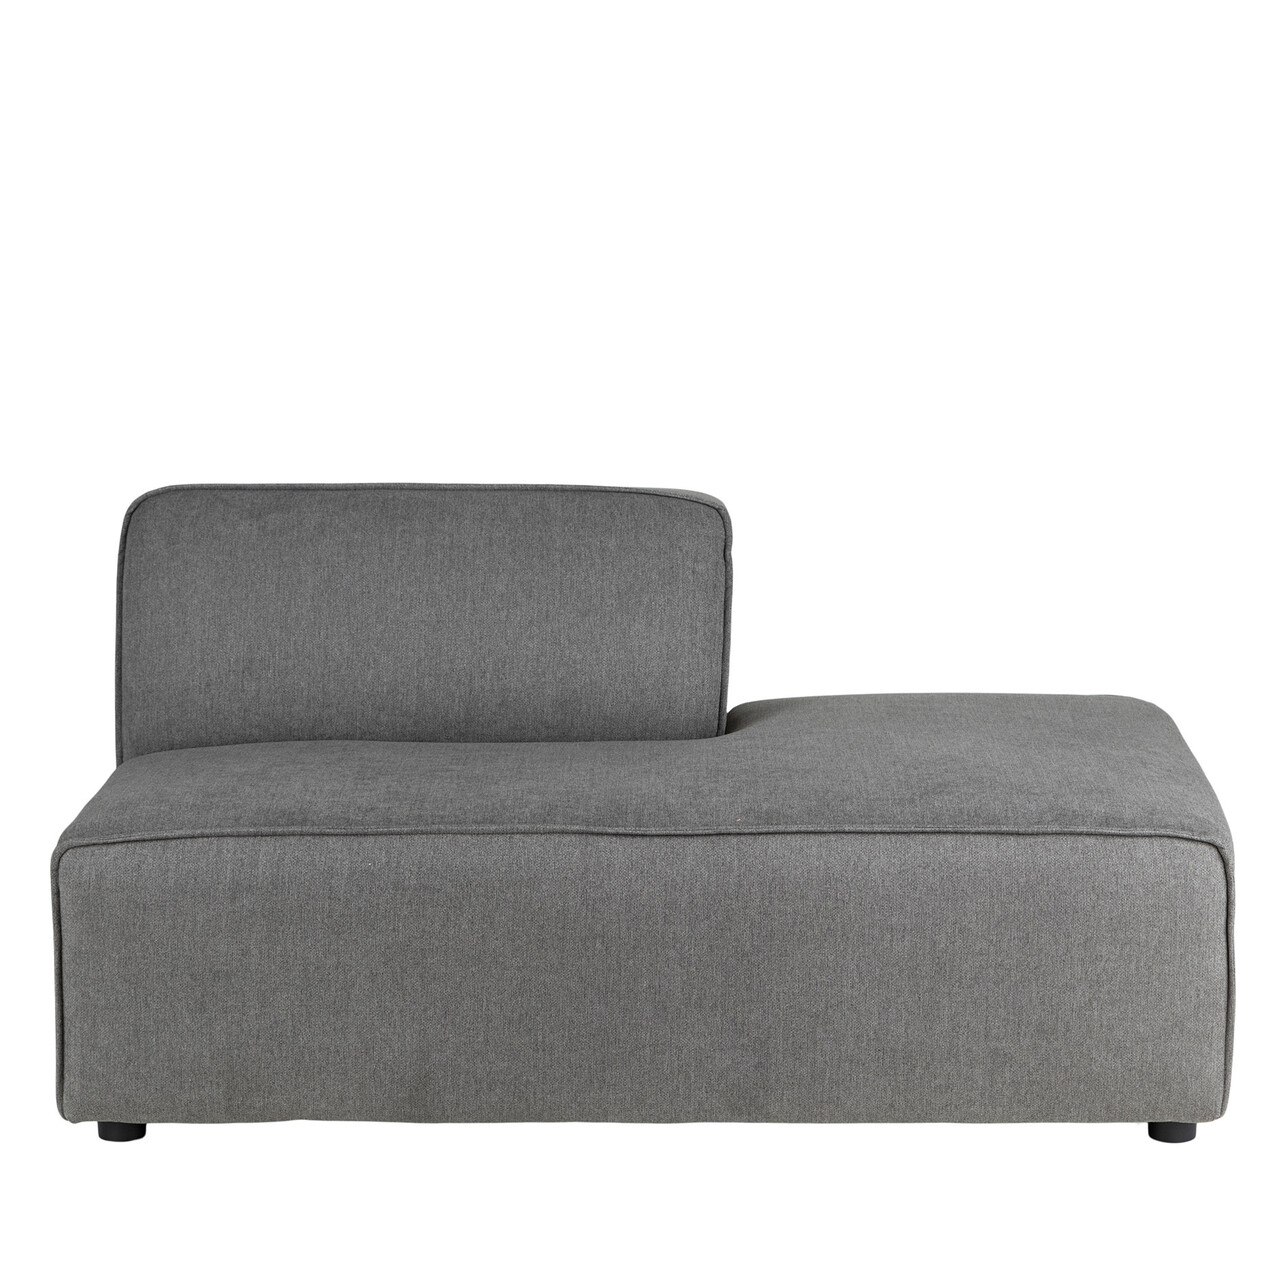 KINGSTON chaiselong sofamodul højrevendt (GRÅ ONESIZE)